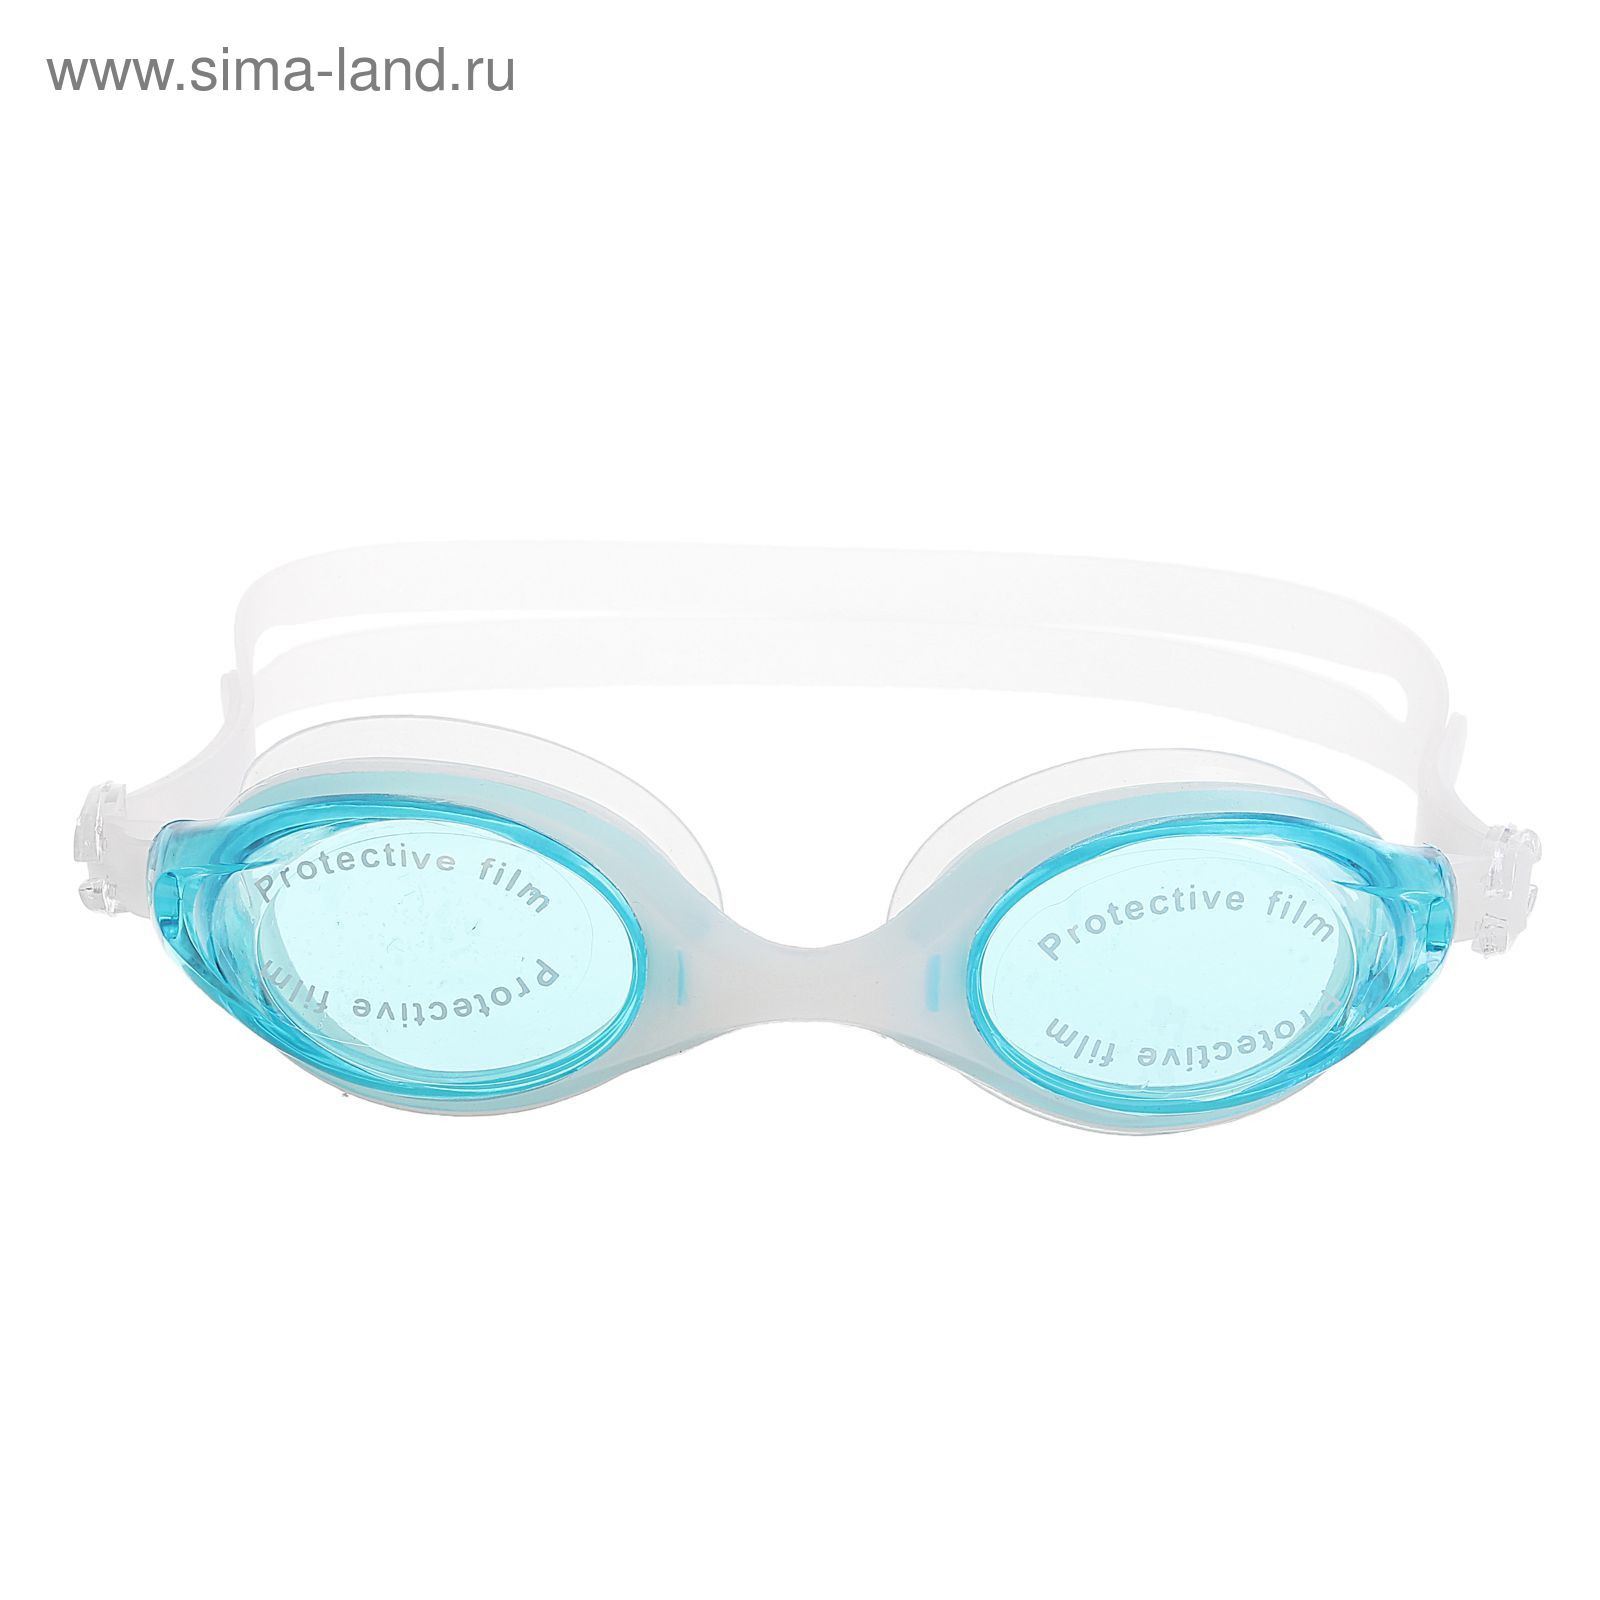 Очки для плавания взрослые с берушами, цвета МИКС